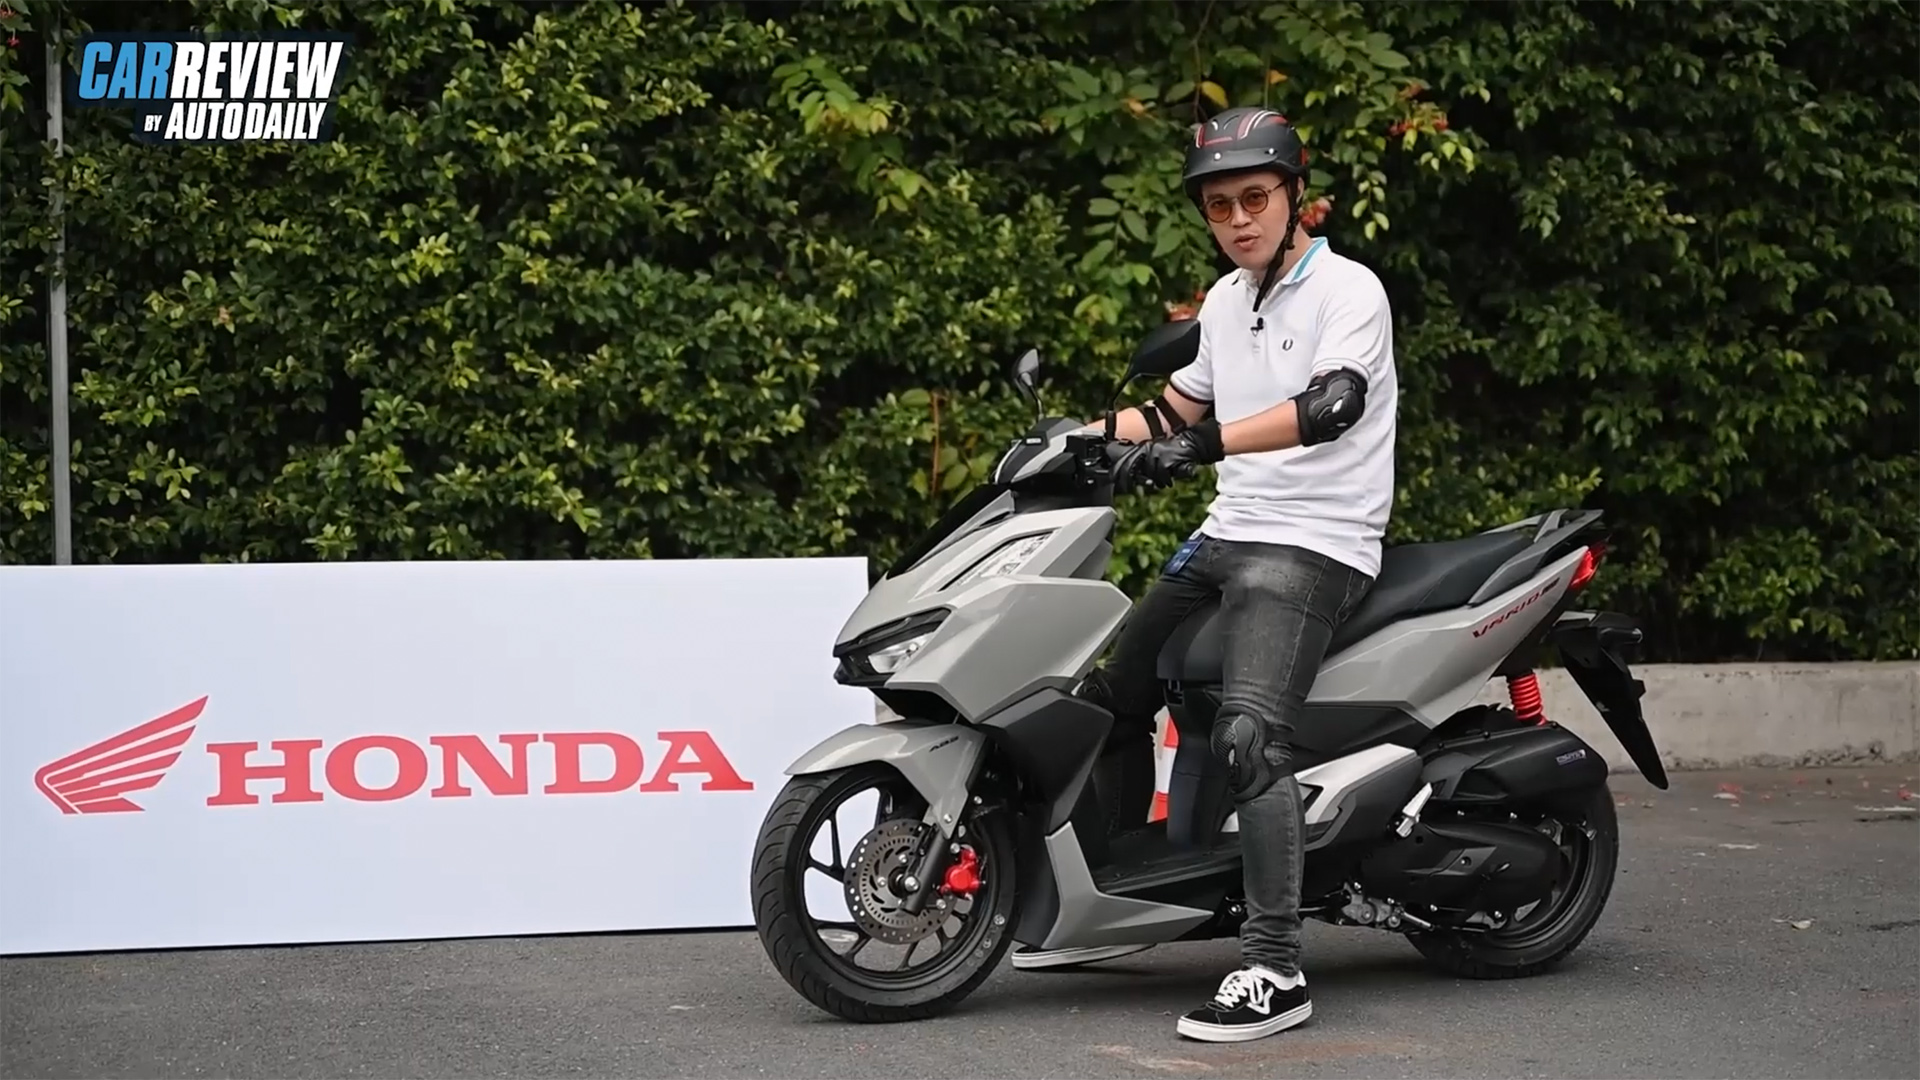 Chạy thử Honda Vario 160 - Ngon - dễ chạy đầy đường???